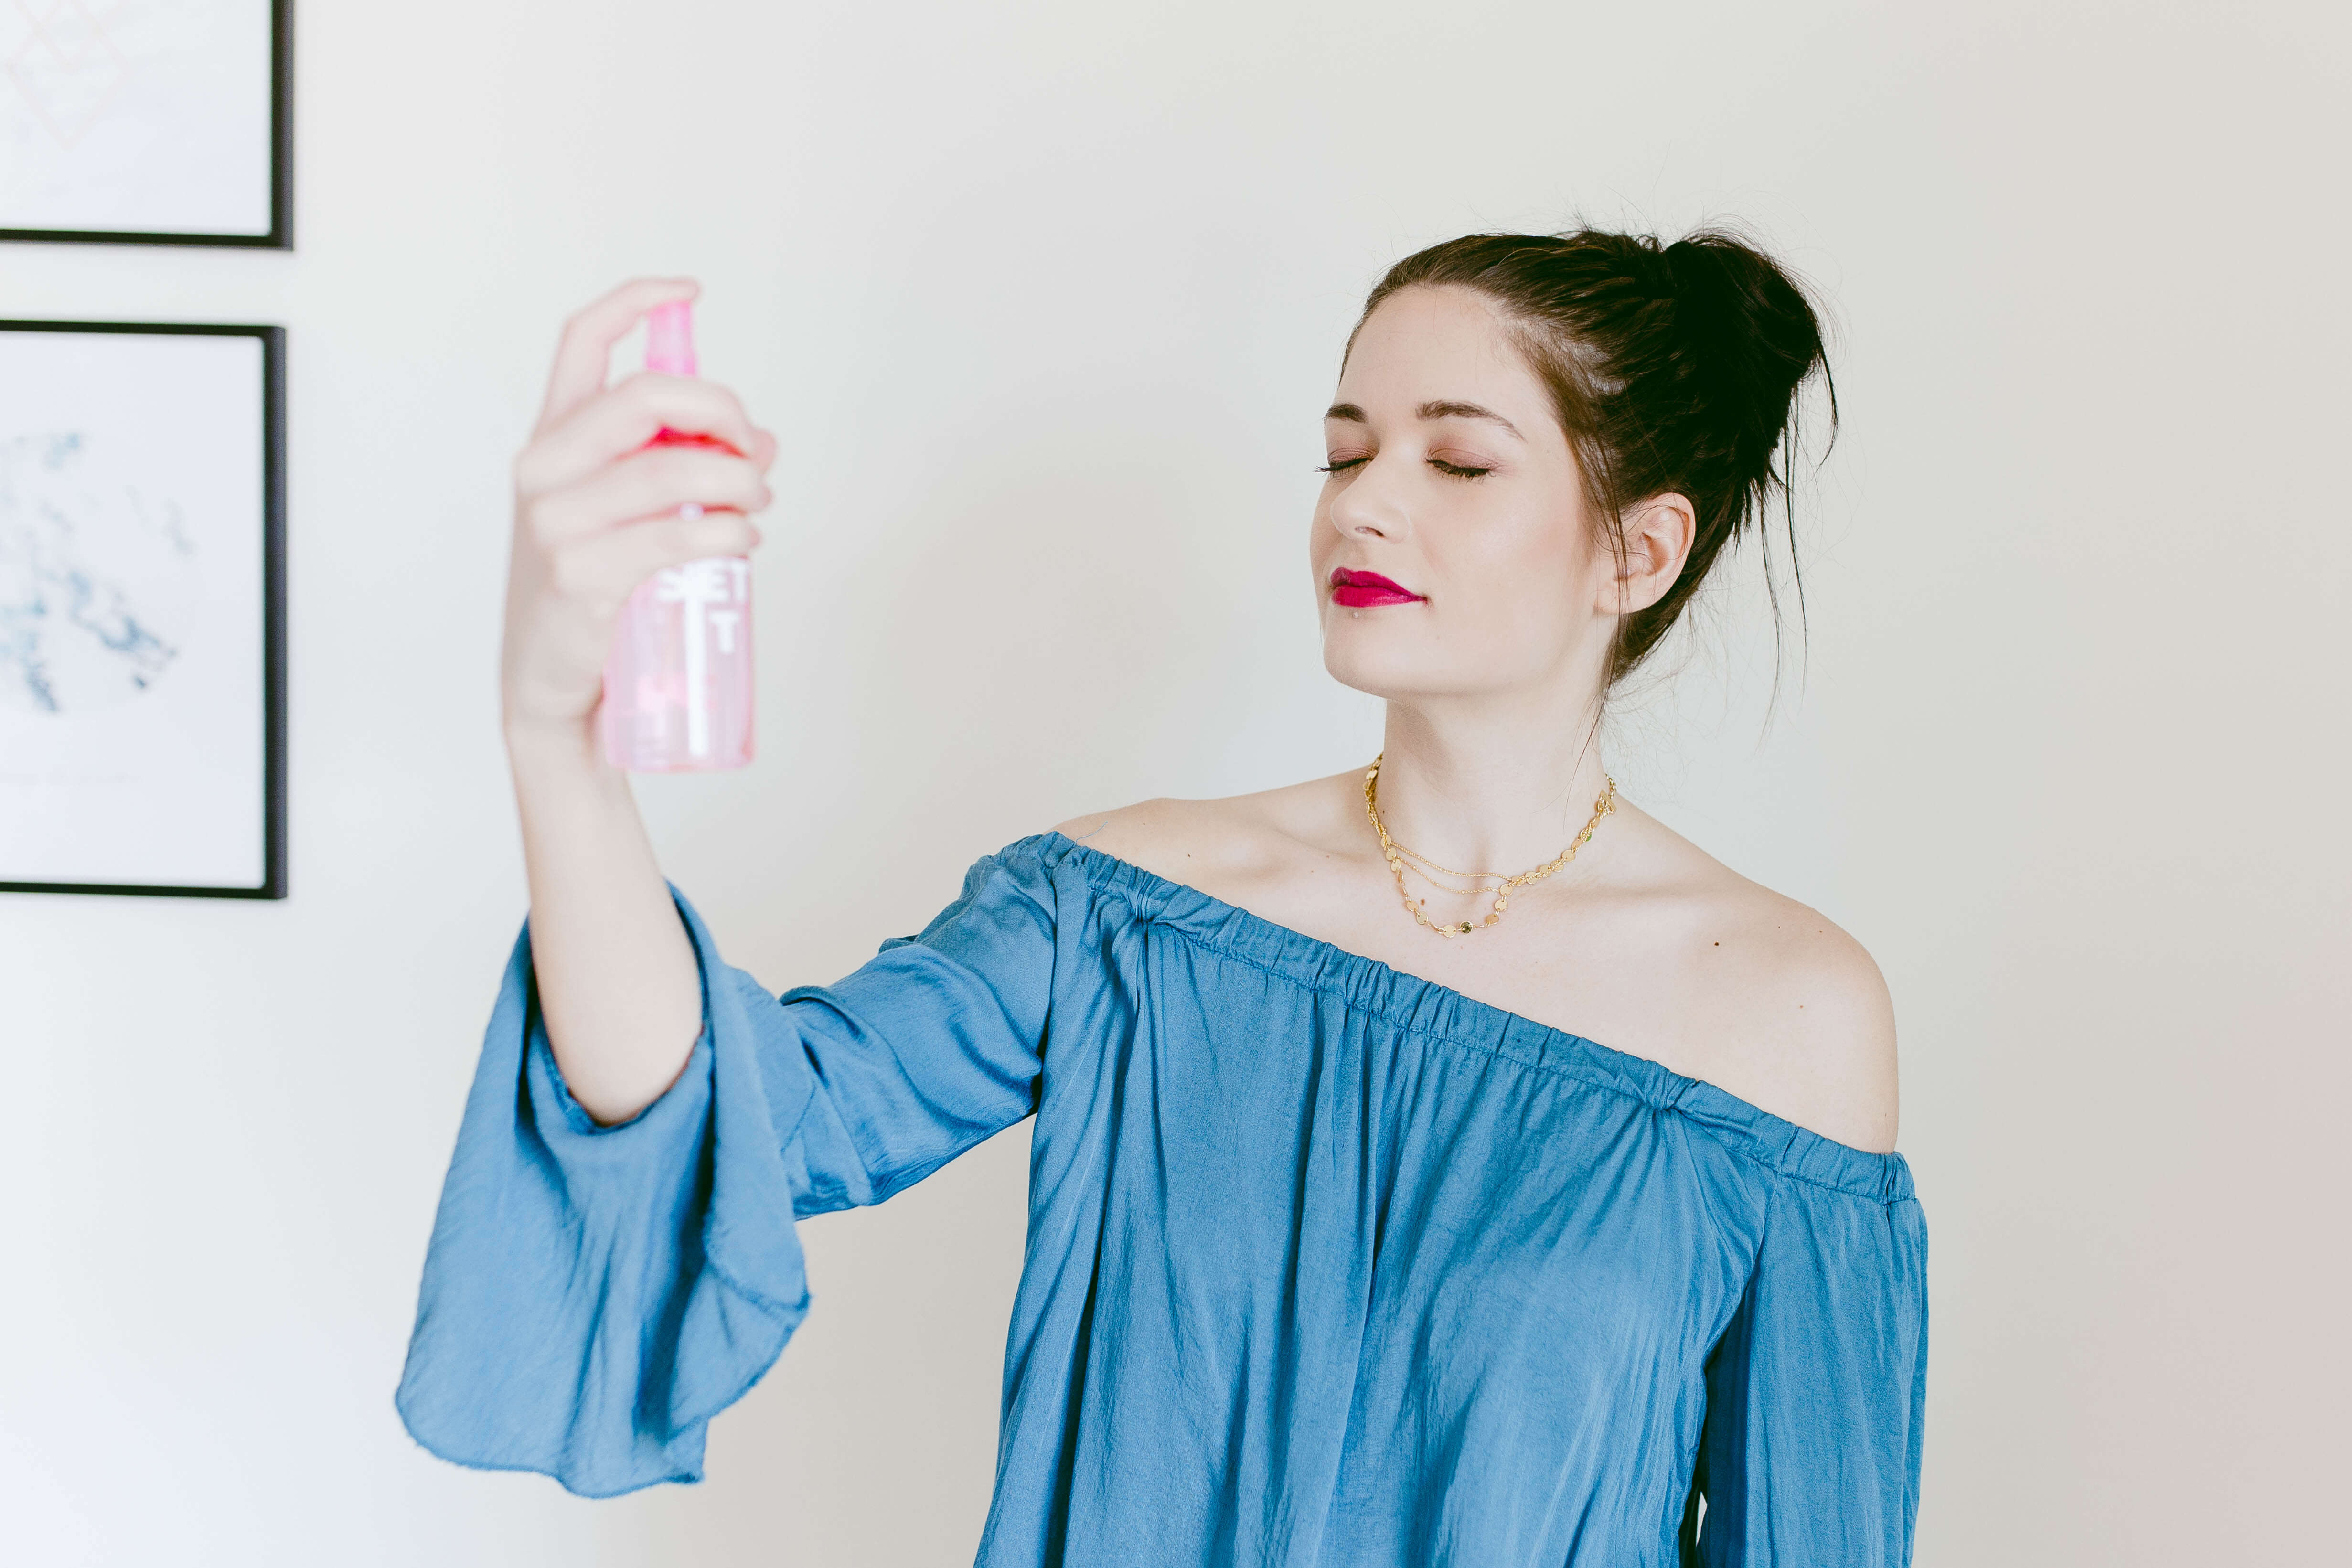 DIY Makeup Setting Spray | Twinspiration